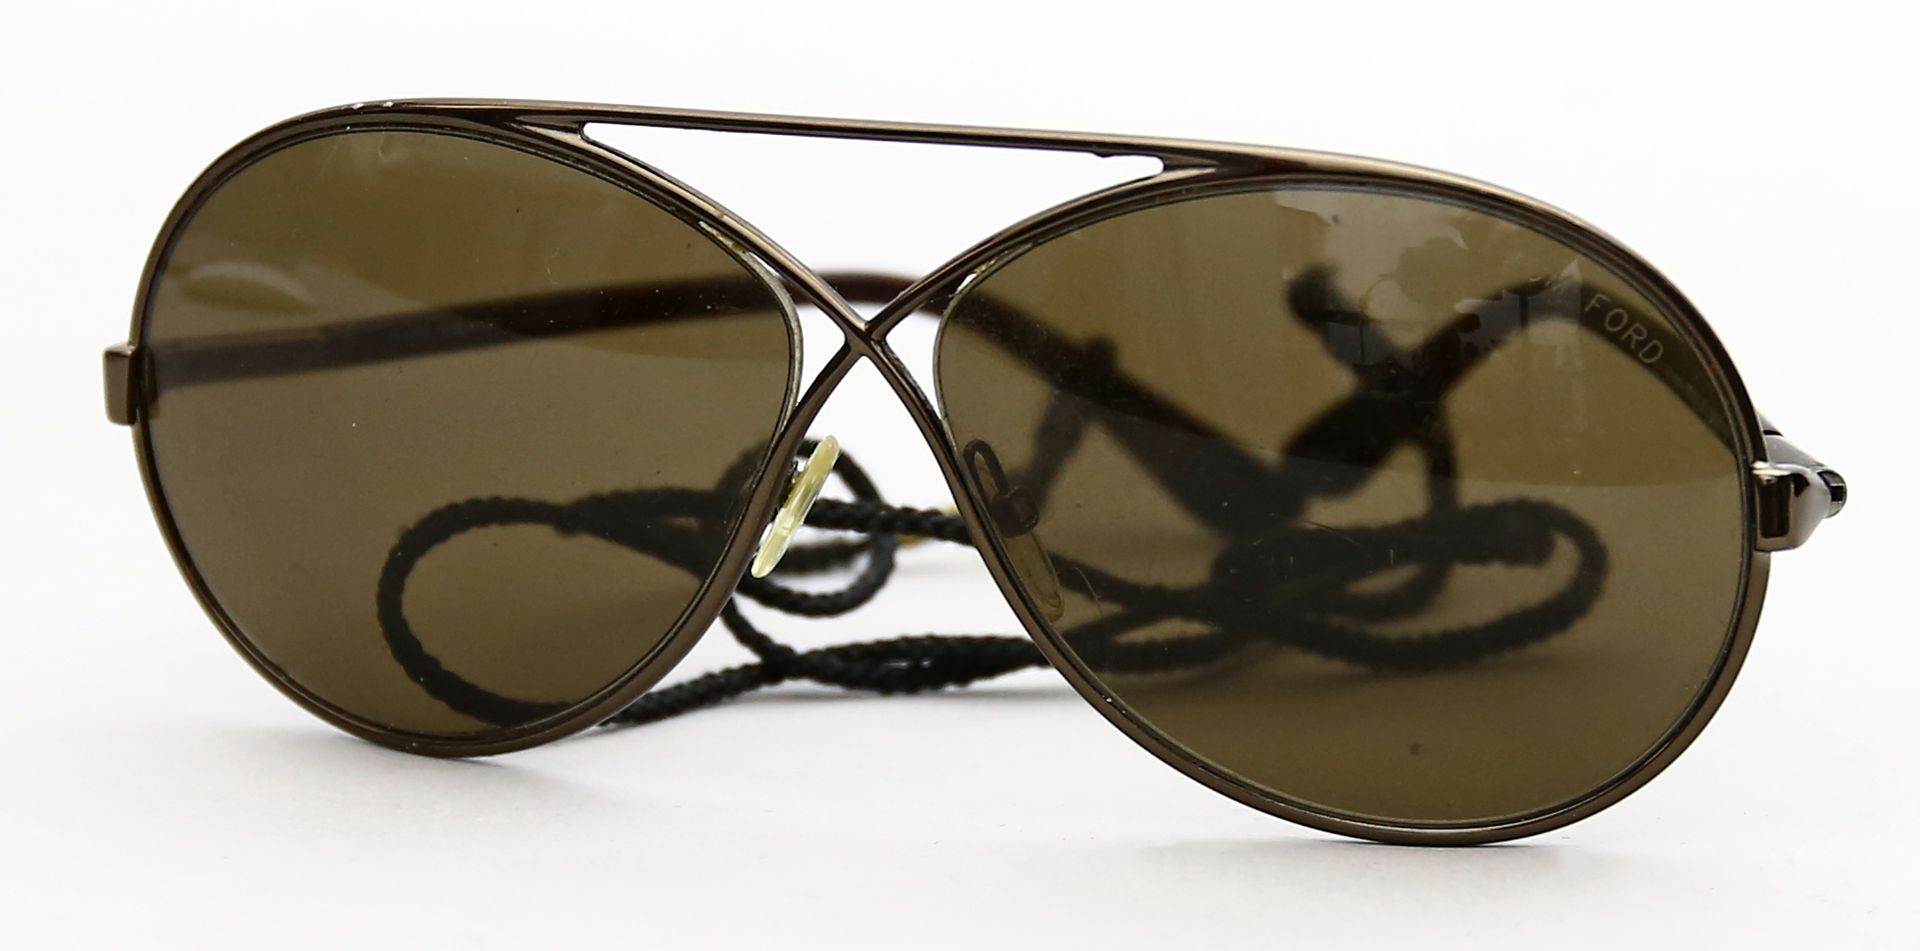 Vintage-Sonnenbrille "Georgette", Tom Ford.